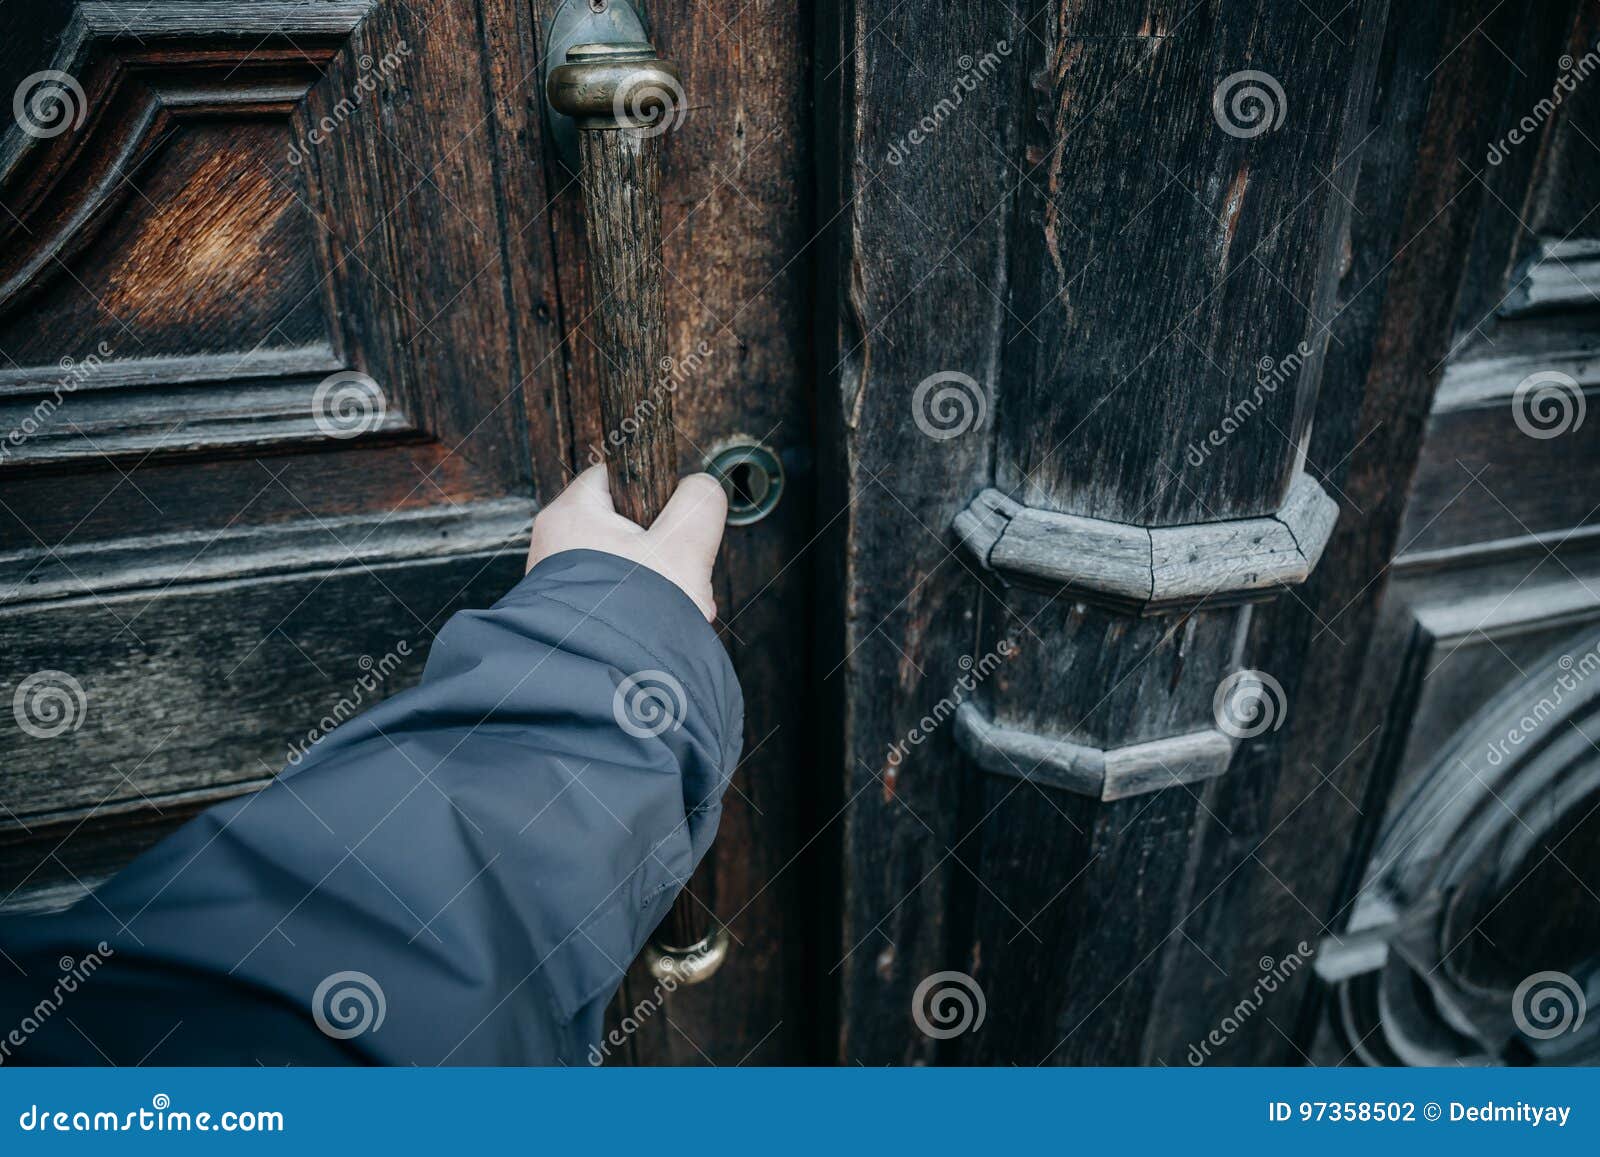 Дверь открывается рукой. Мужская рука открывает дверь. Рука на двери. Открывает дверь от первого лица. Рука приоткрывает дверь.